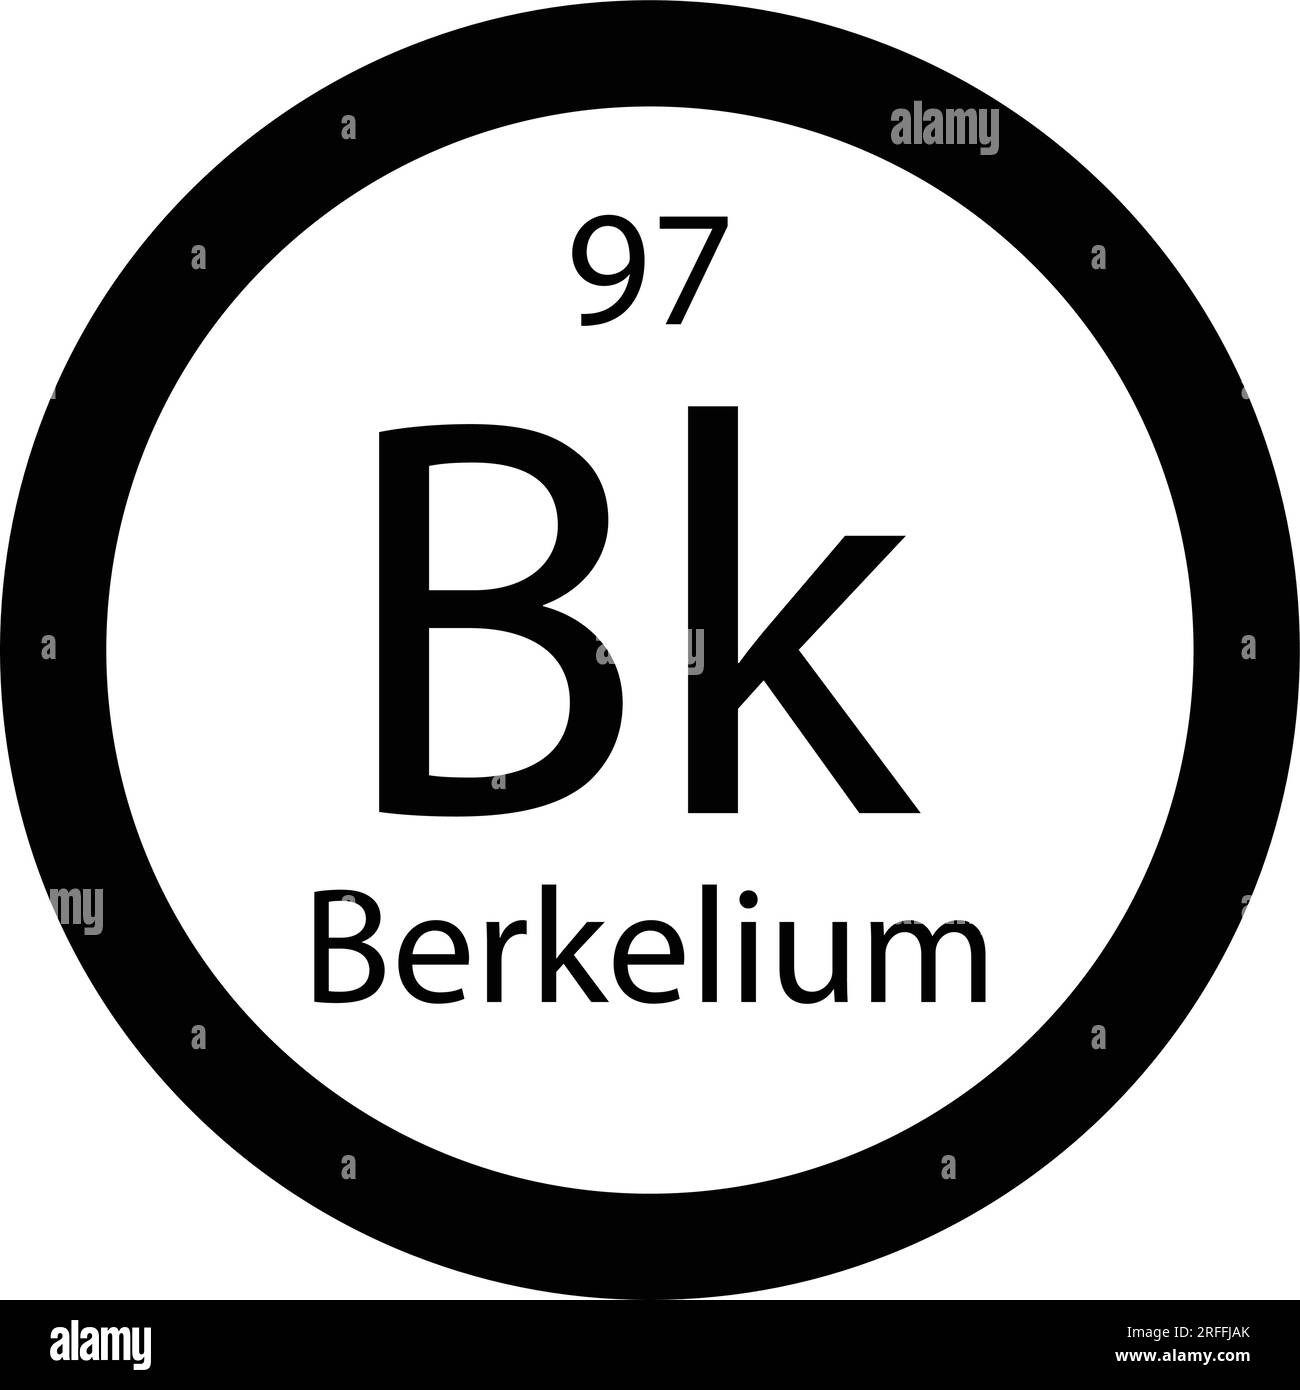 Periodic table element berkelium icon vector image Stock Vector